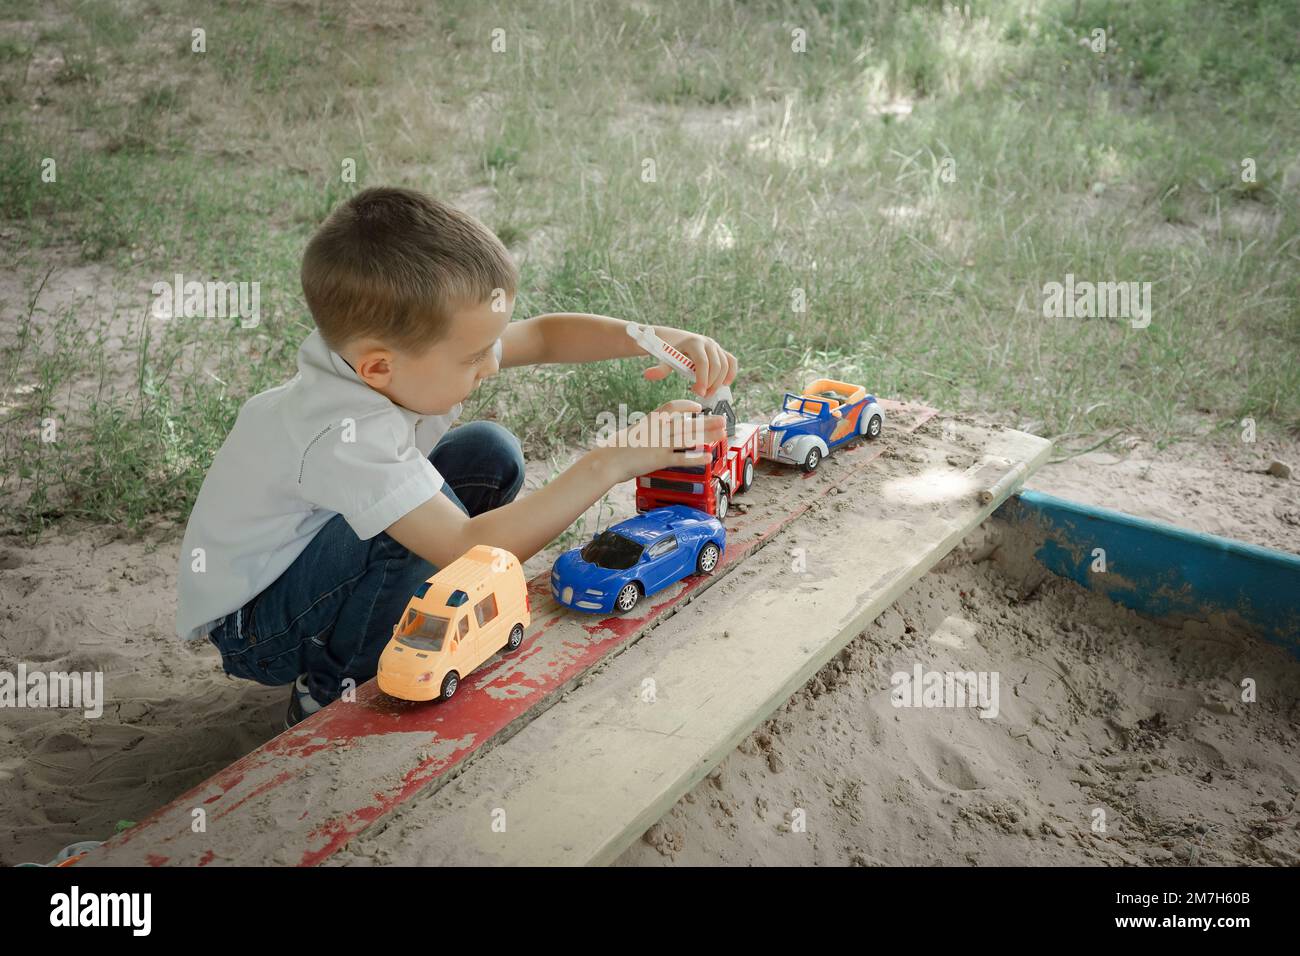 Un petit garçon joue avec des voitures jouets dans le bac à sable en plein air Banque D'Images